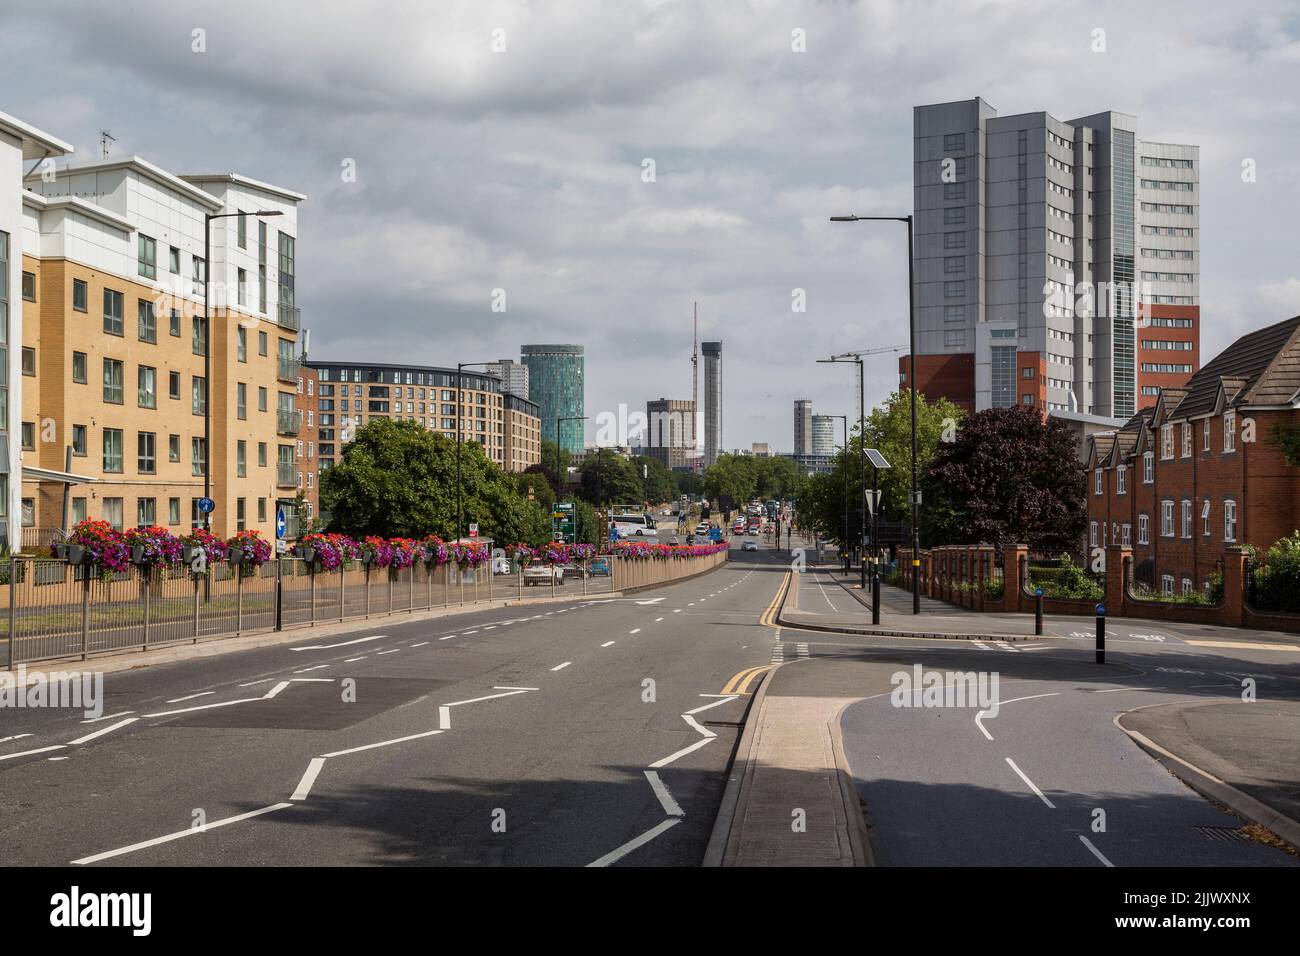 Centro di Birmingham, guardando lungo la A38 Bristol Road da sud. I nuovi blocchi della torre sono visibili in fase di costruzione. Foto Stock